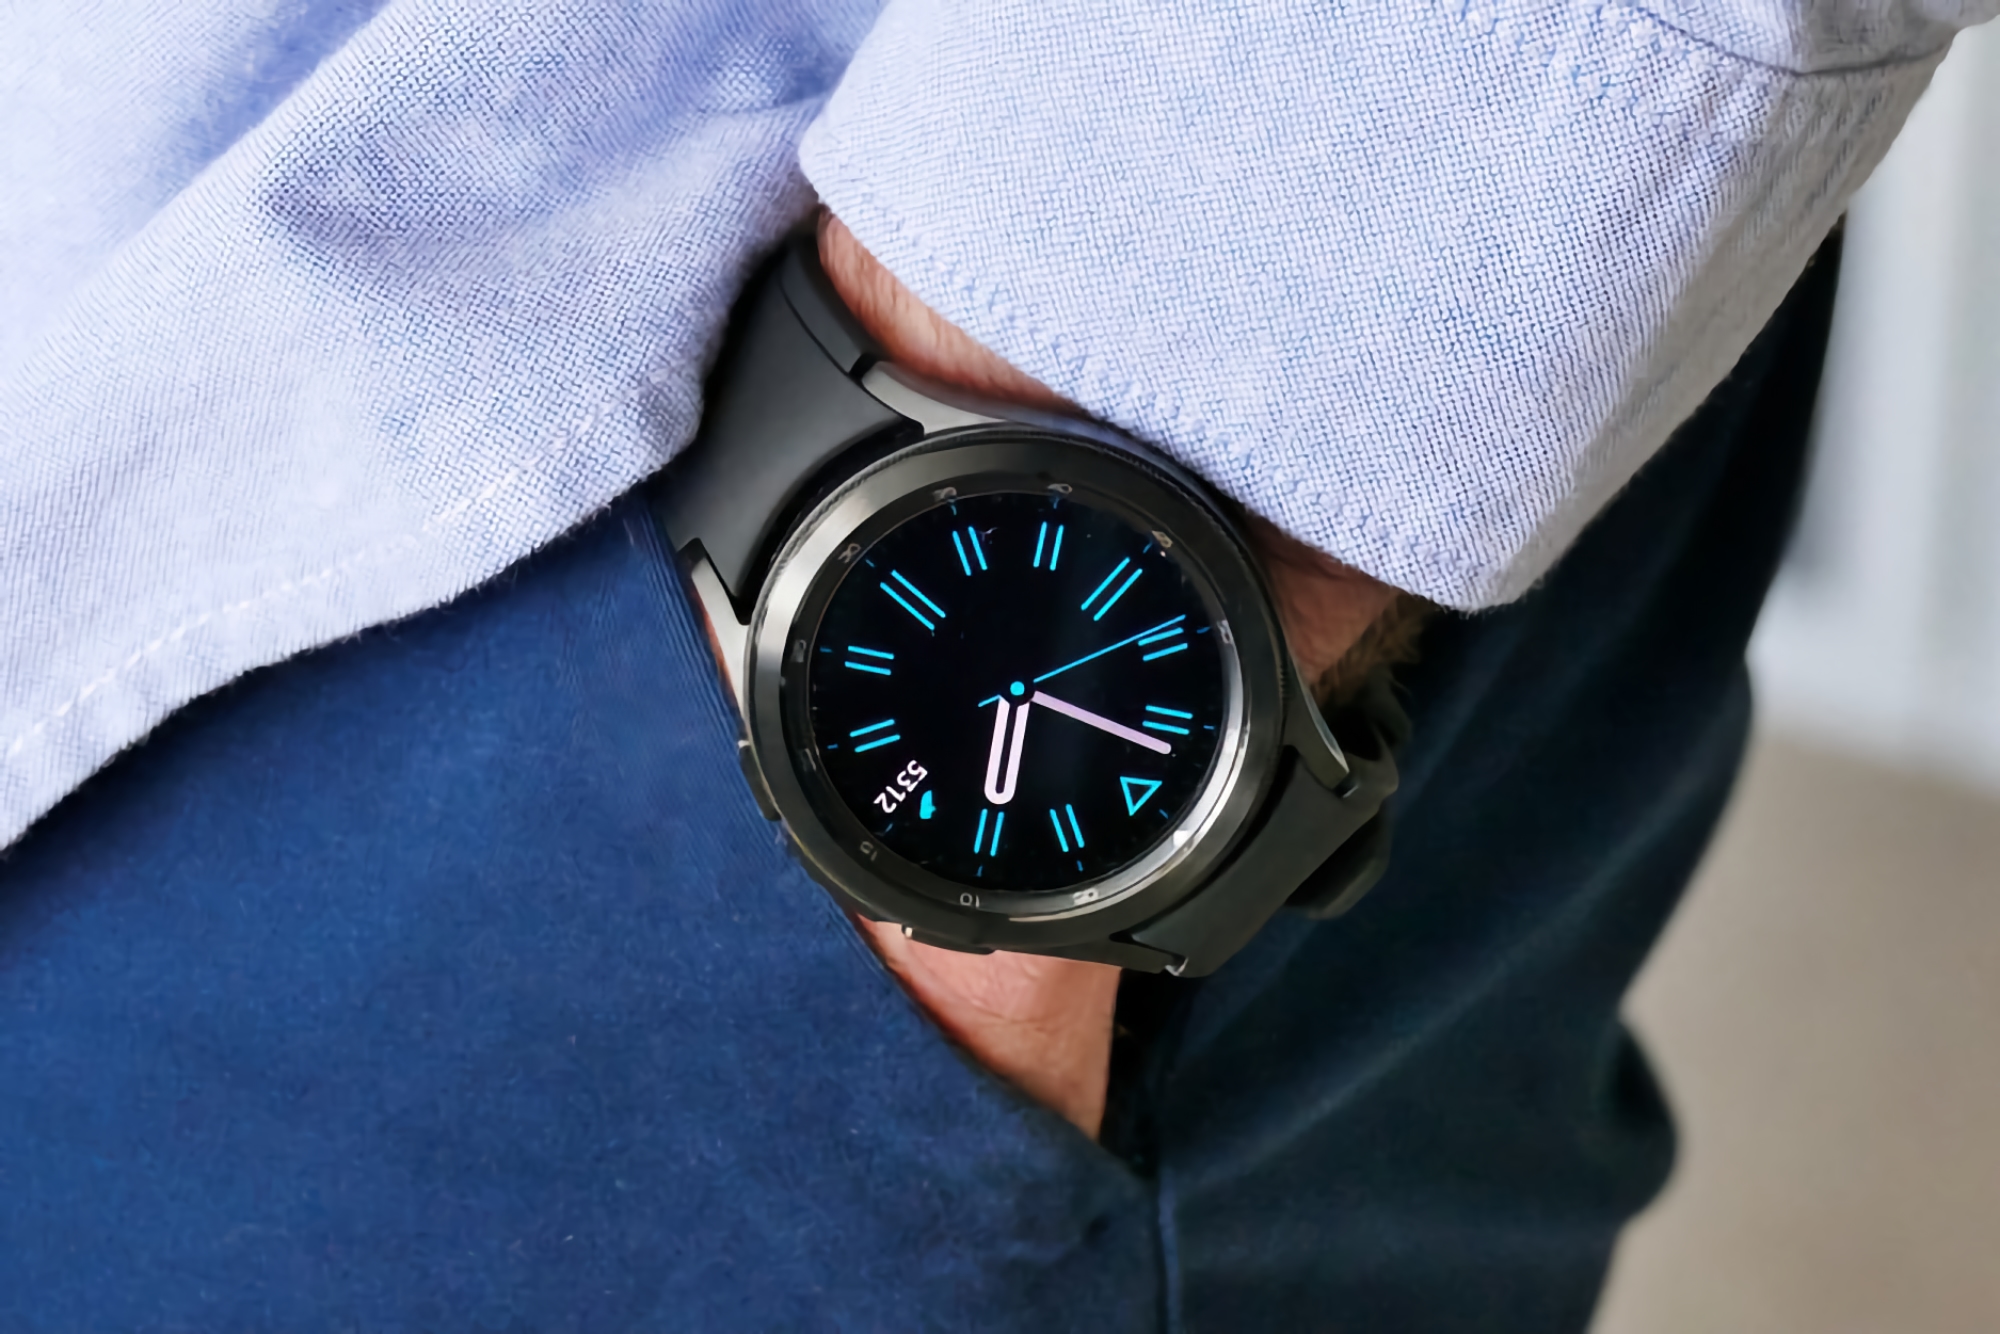 Samsung udostępnia nową aktualizację oprogramowania dla smartwatchów Galaxy Watch 4 i Galaxy Watch 4 Classic